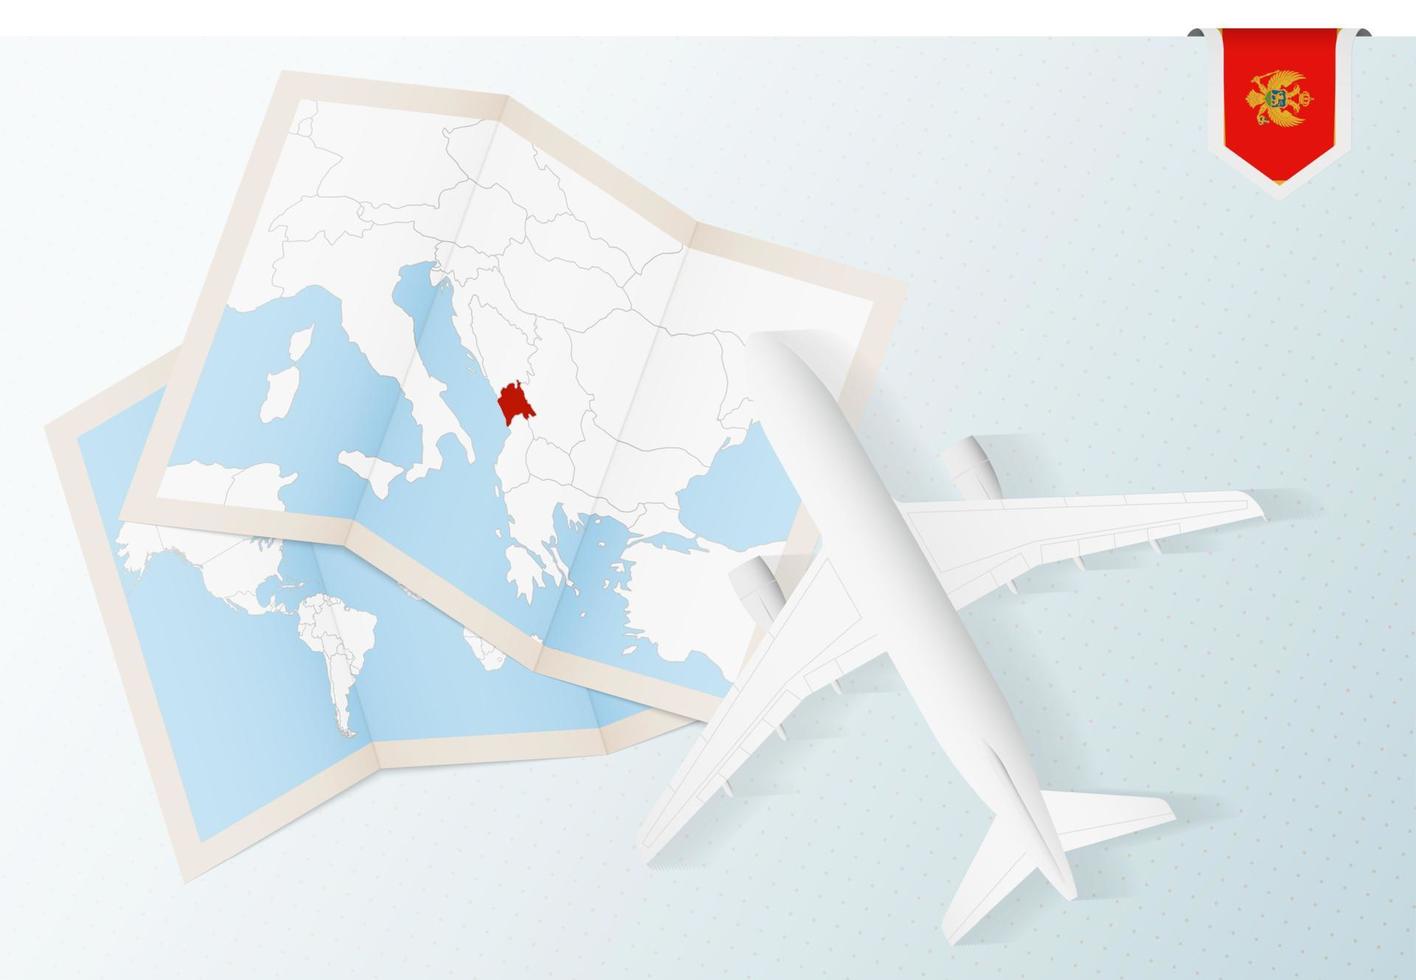 viaje a montenegro, avión de vista superior con mapa y bandera de montenegro. vector